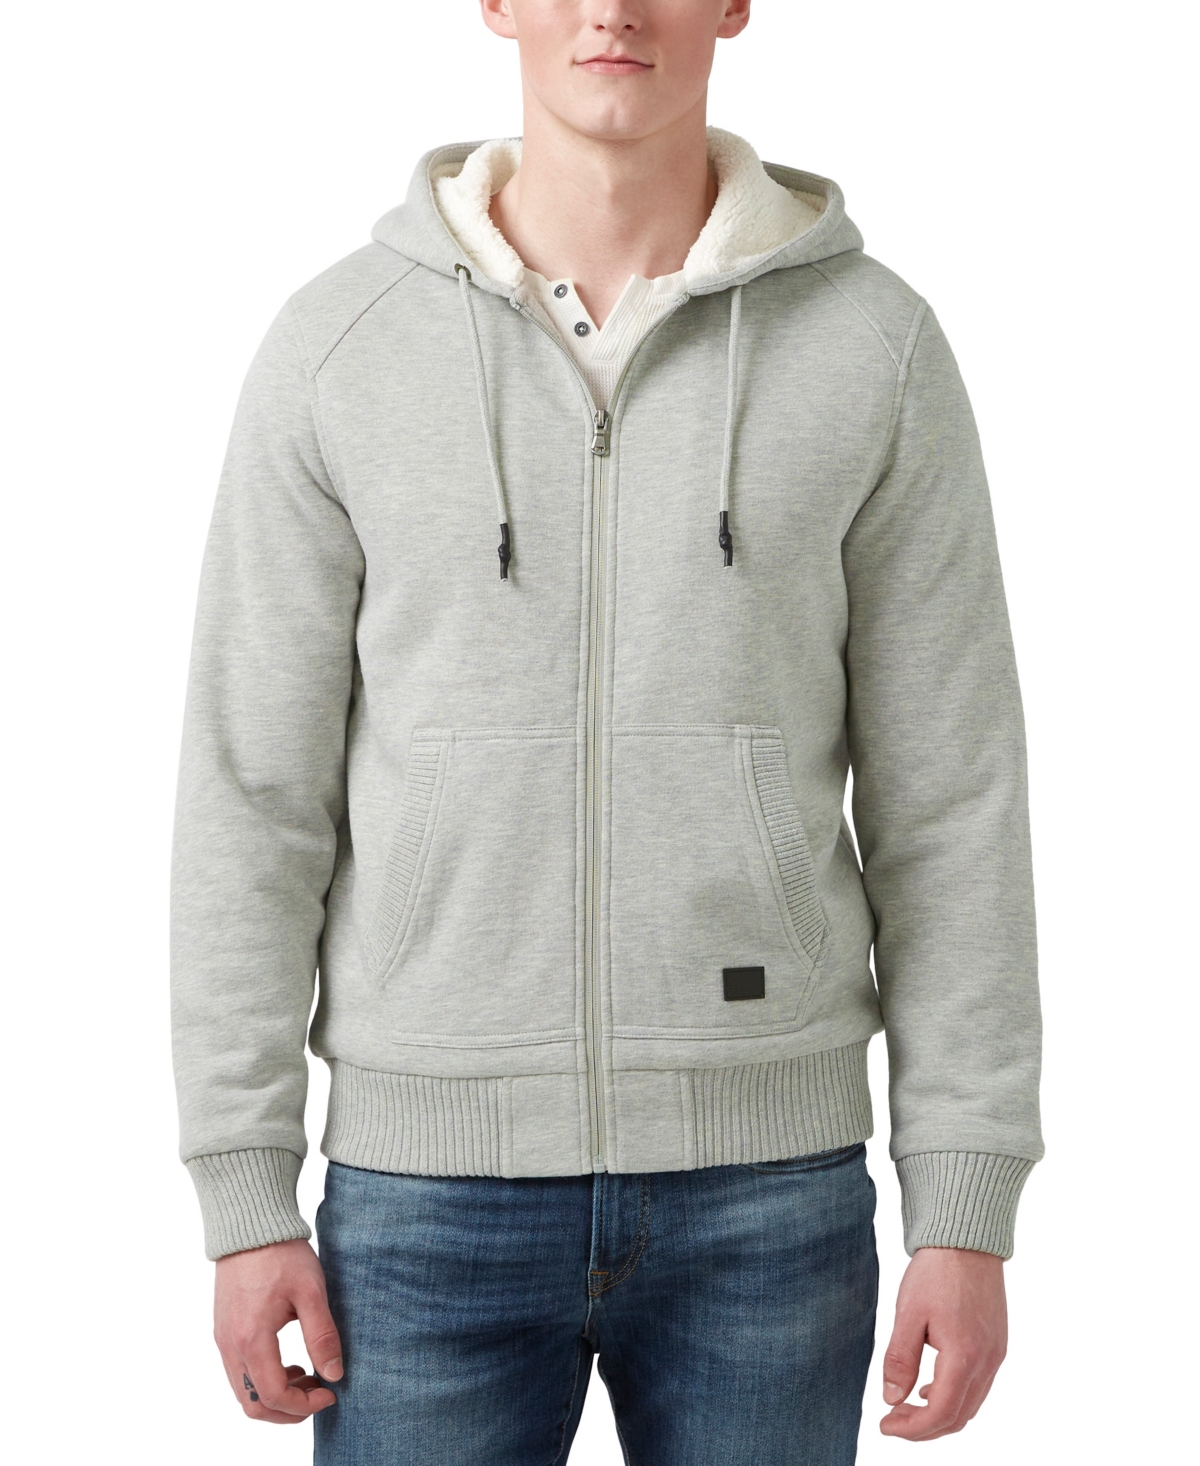 Men's Fasox Fleece Lined Full-Zip Sweatshirt - Heather Gray